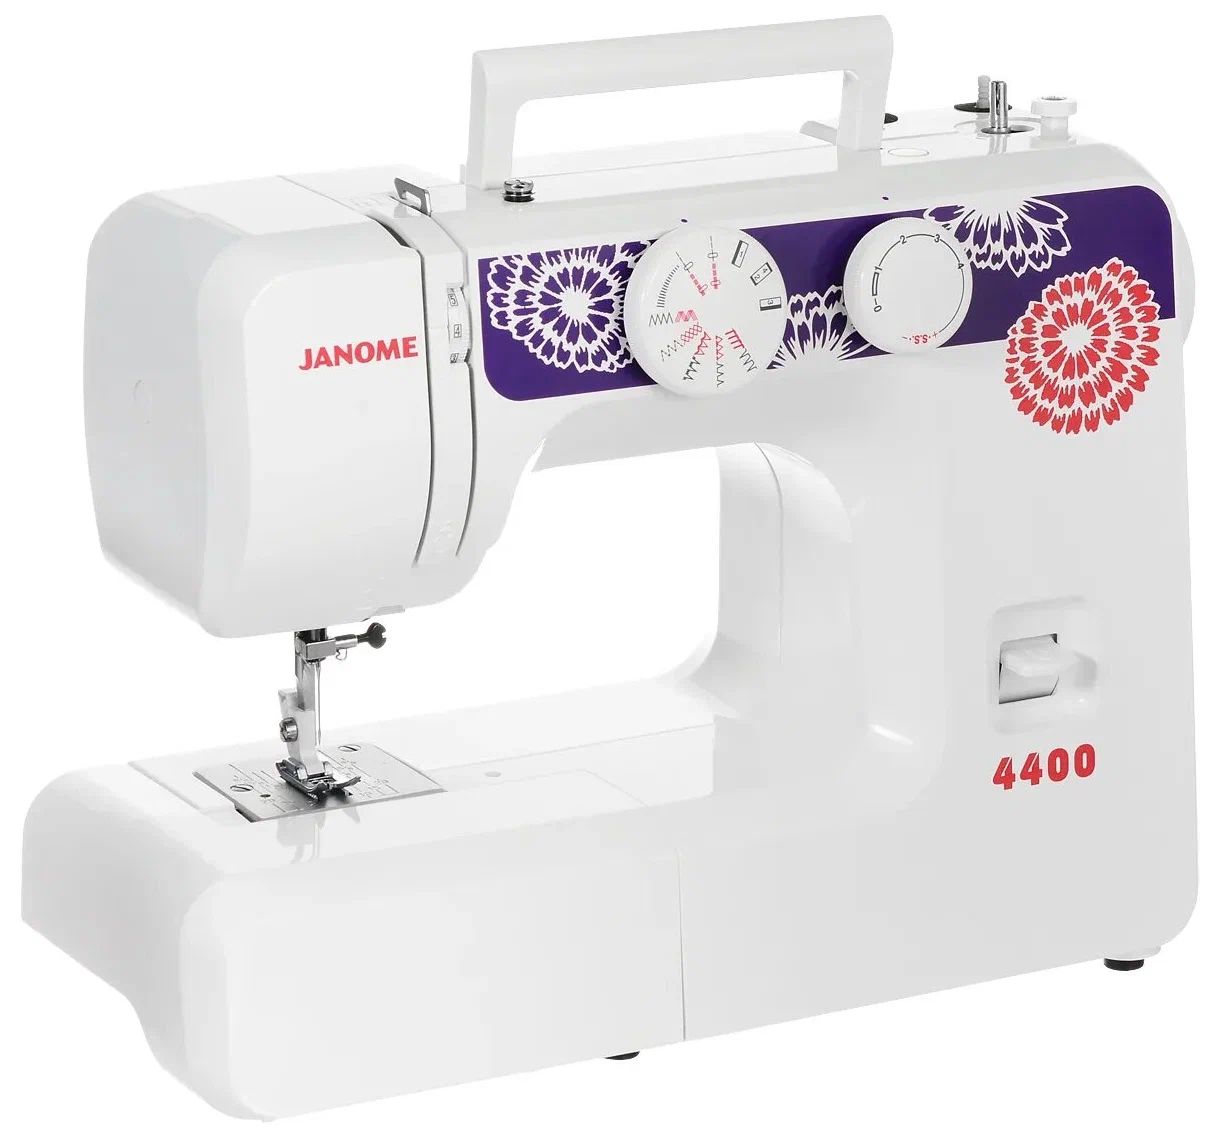 Швейная машина Janome 4400 белый, фиолетовый швейная машина jaguar maestro 17 белый фиолетовый